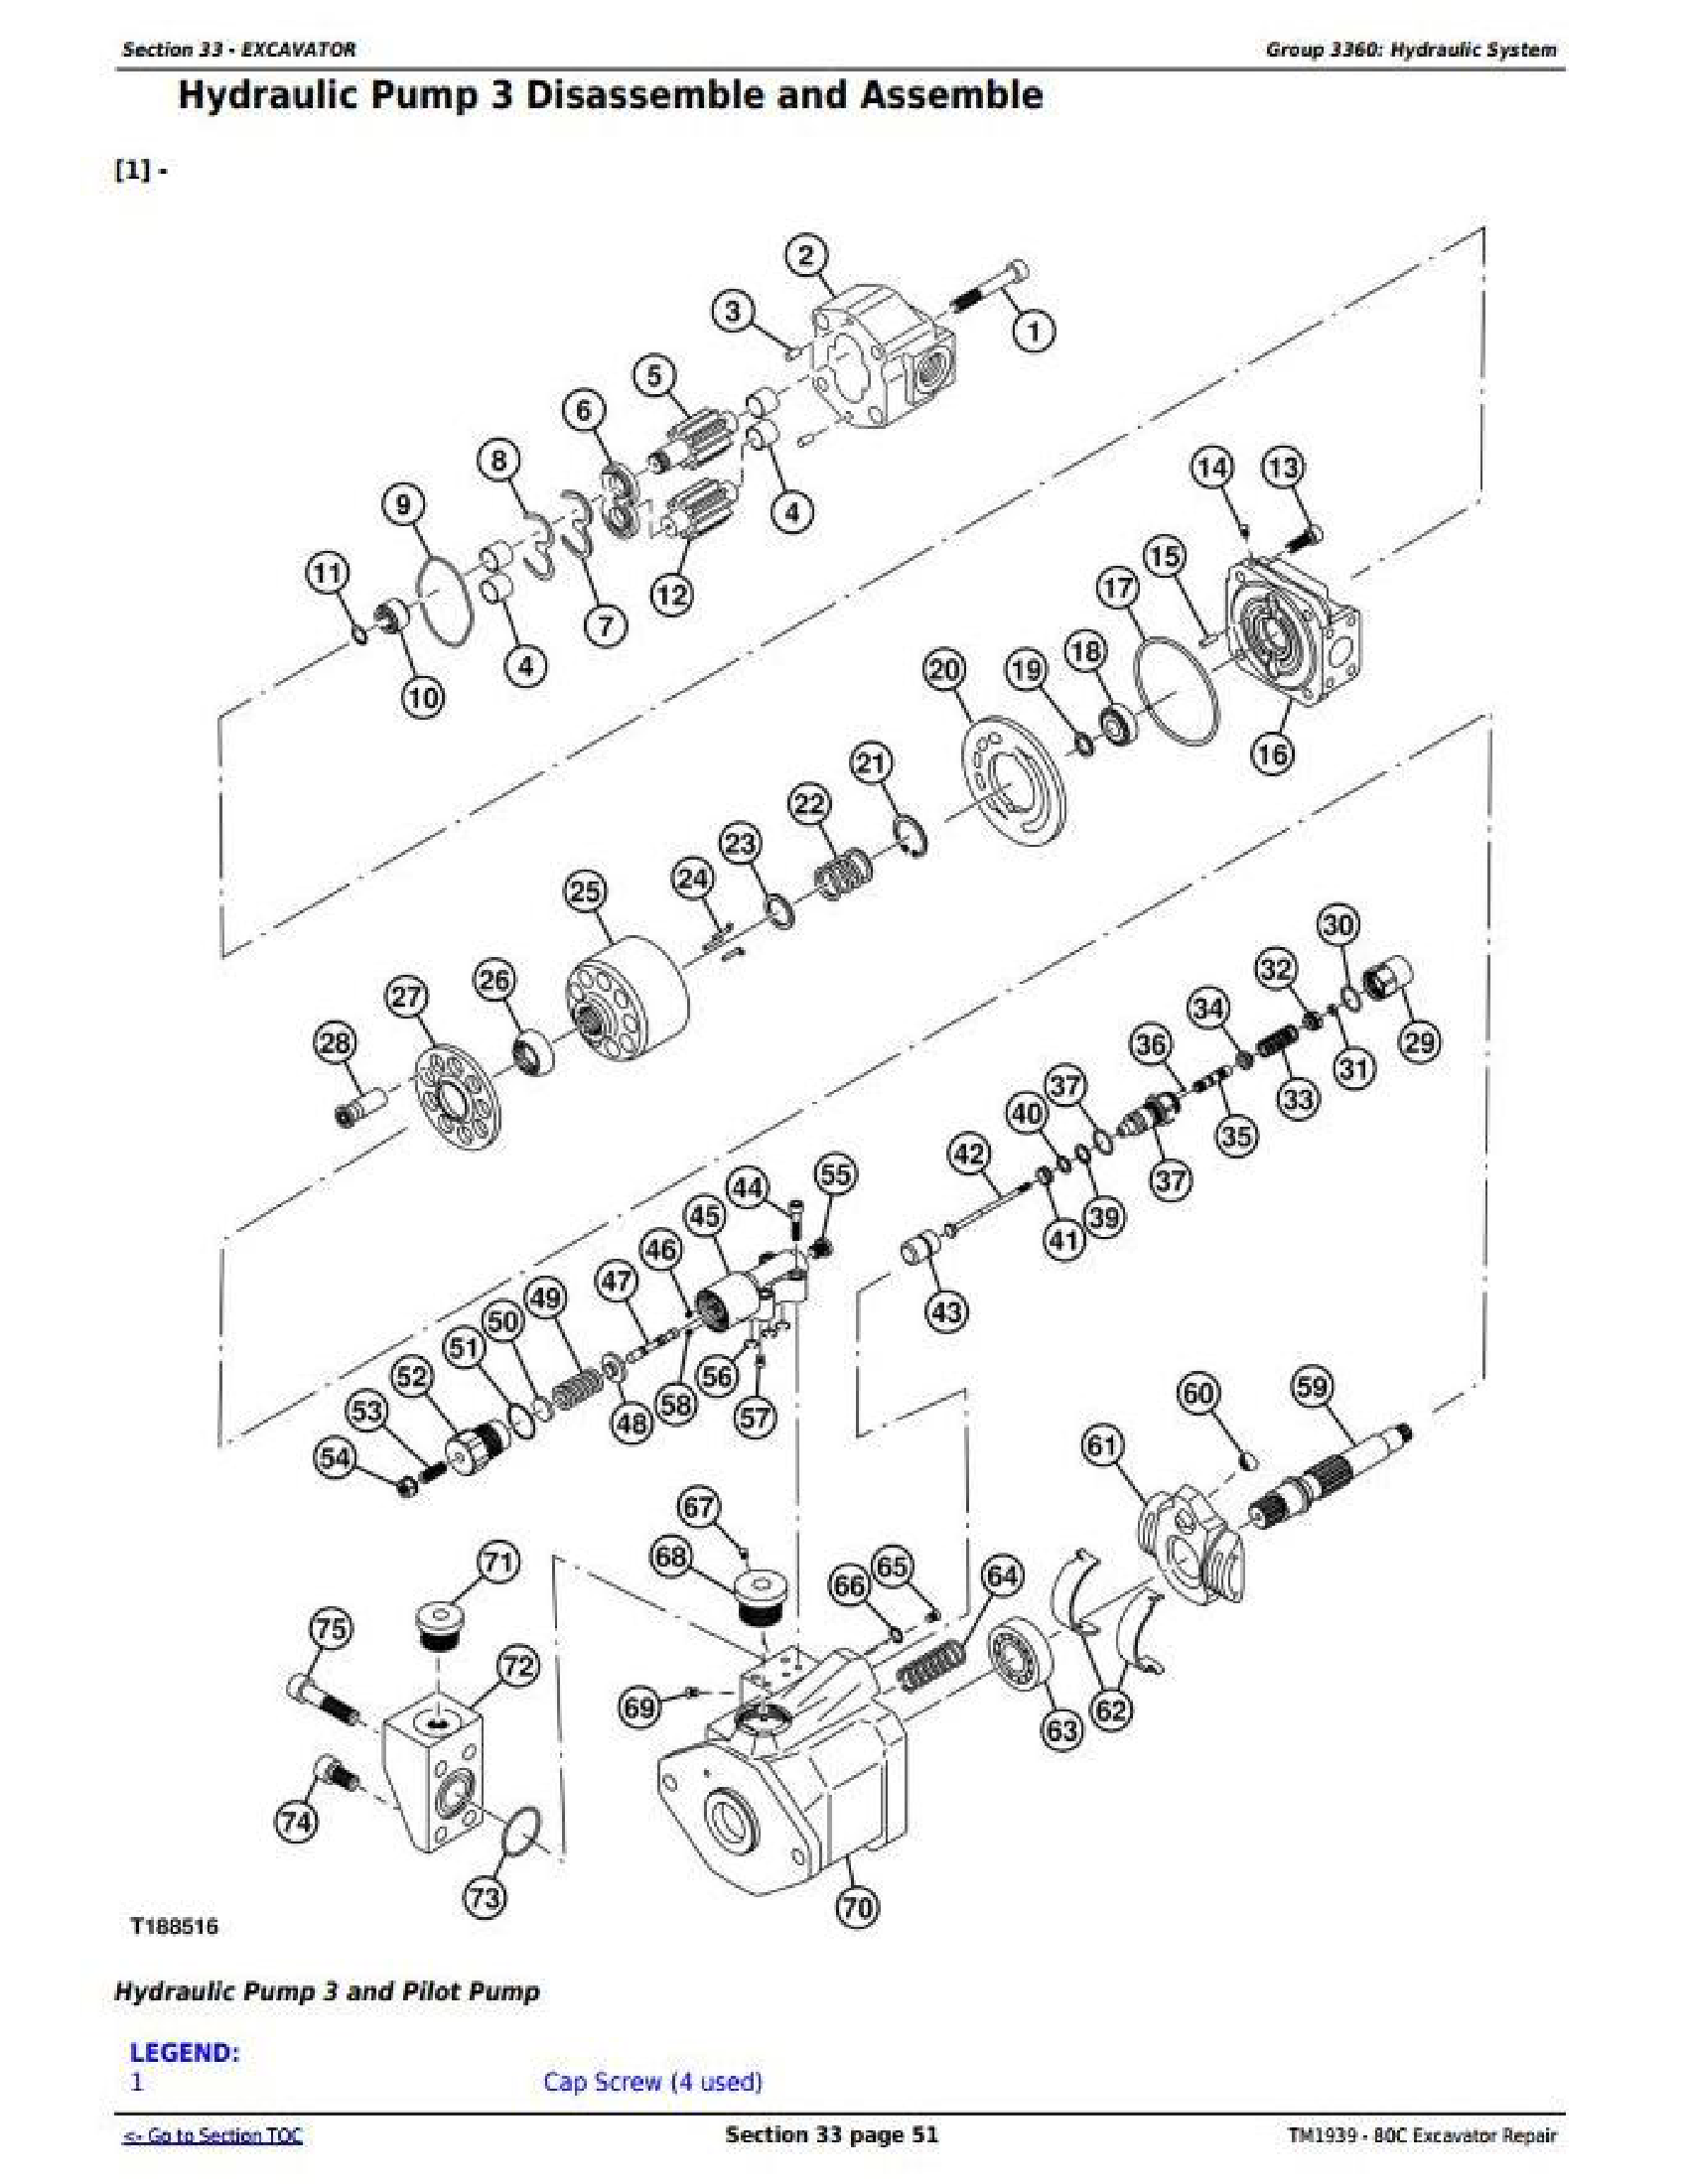 John Deere 310J manual pdf